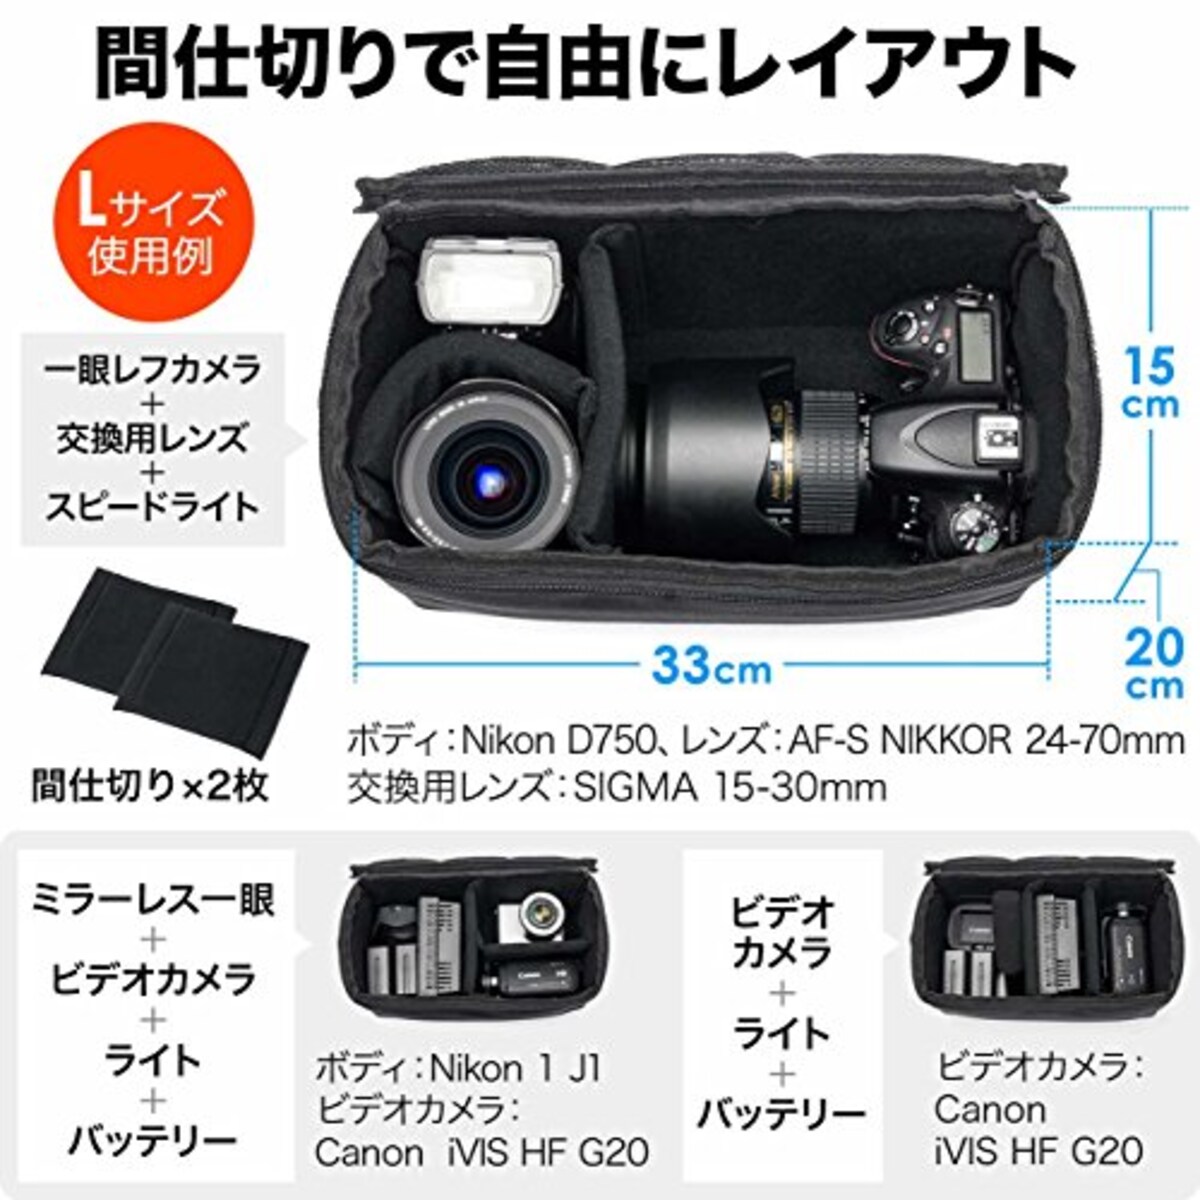  サンワダイレクト カメラバッグ インナーバッグ ショルダーベルト付 ミラーレス 一眼レフ ビデオ対応 撥水加工 Lサイズ 200-DGBG011画像4 